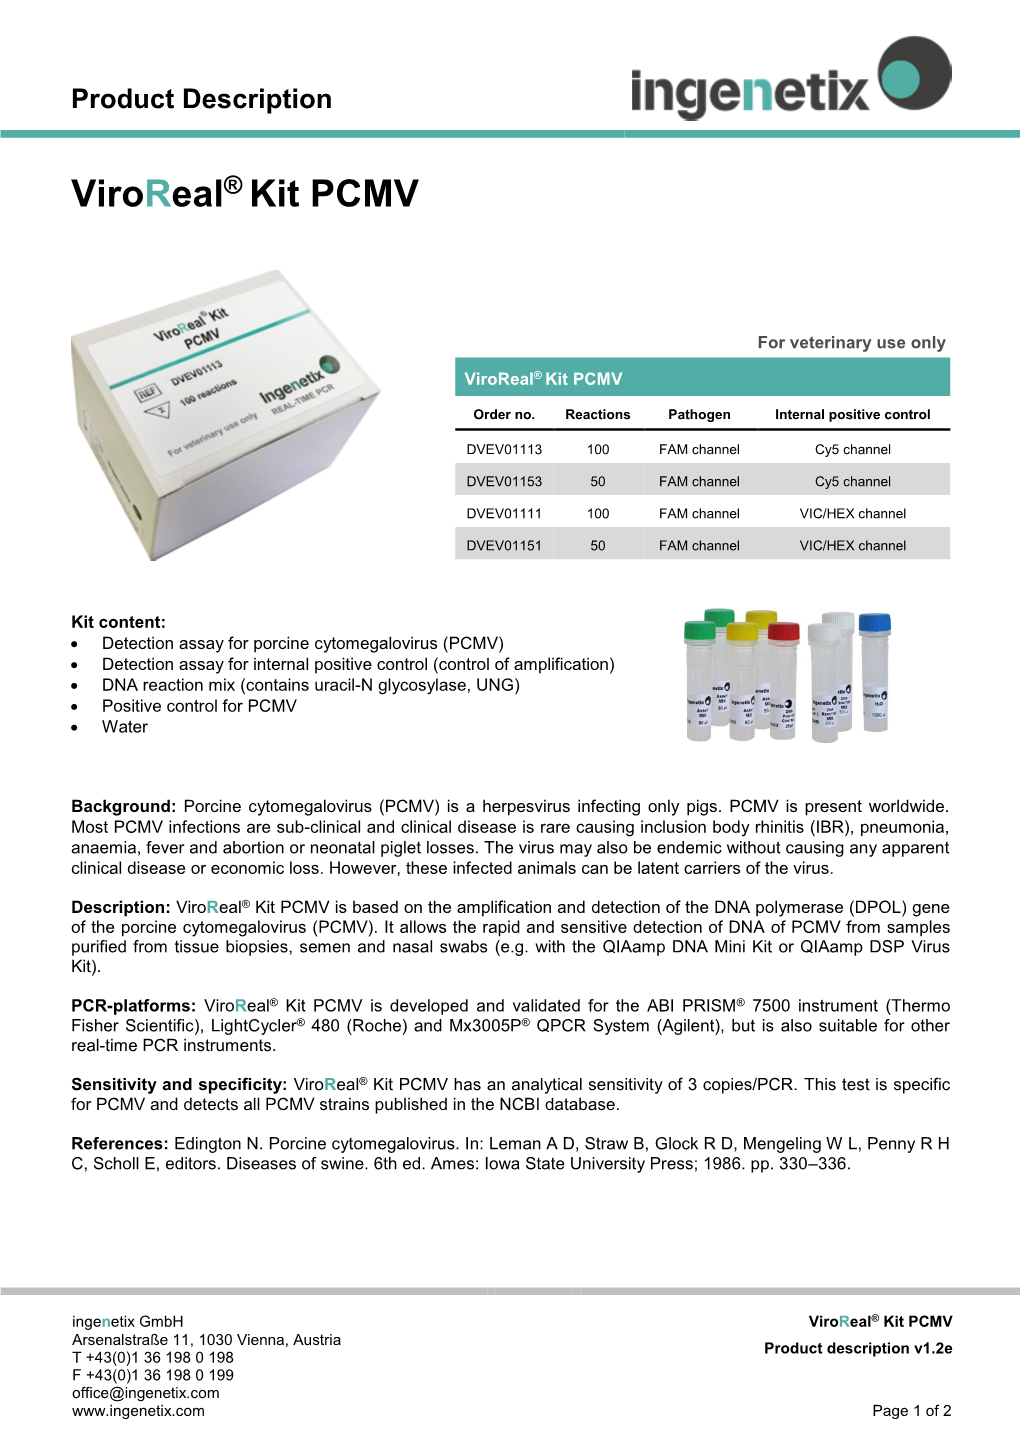 Viroreal® Kit PCMV